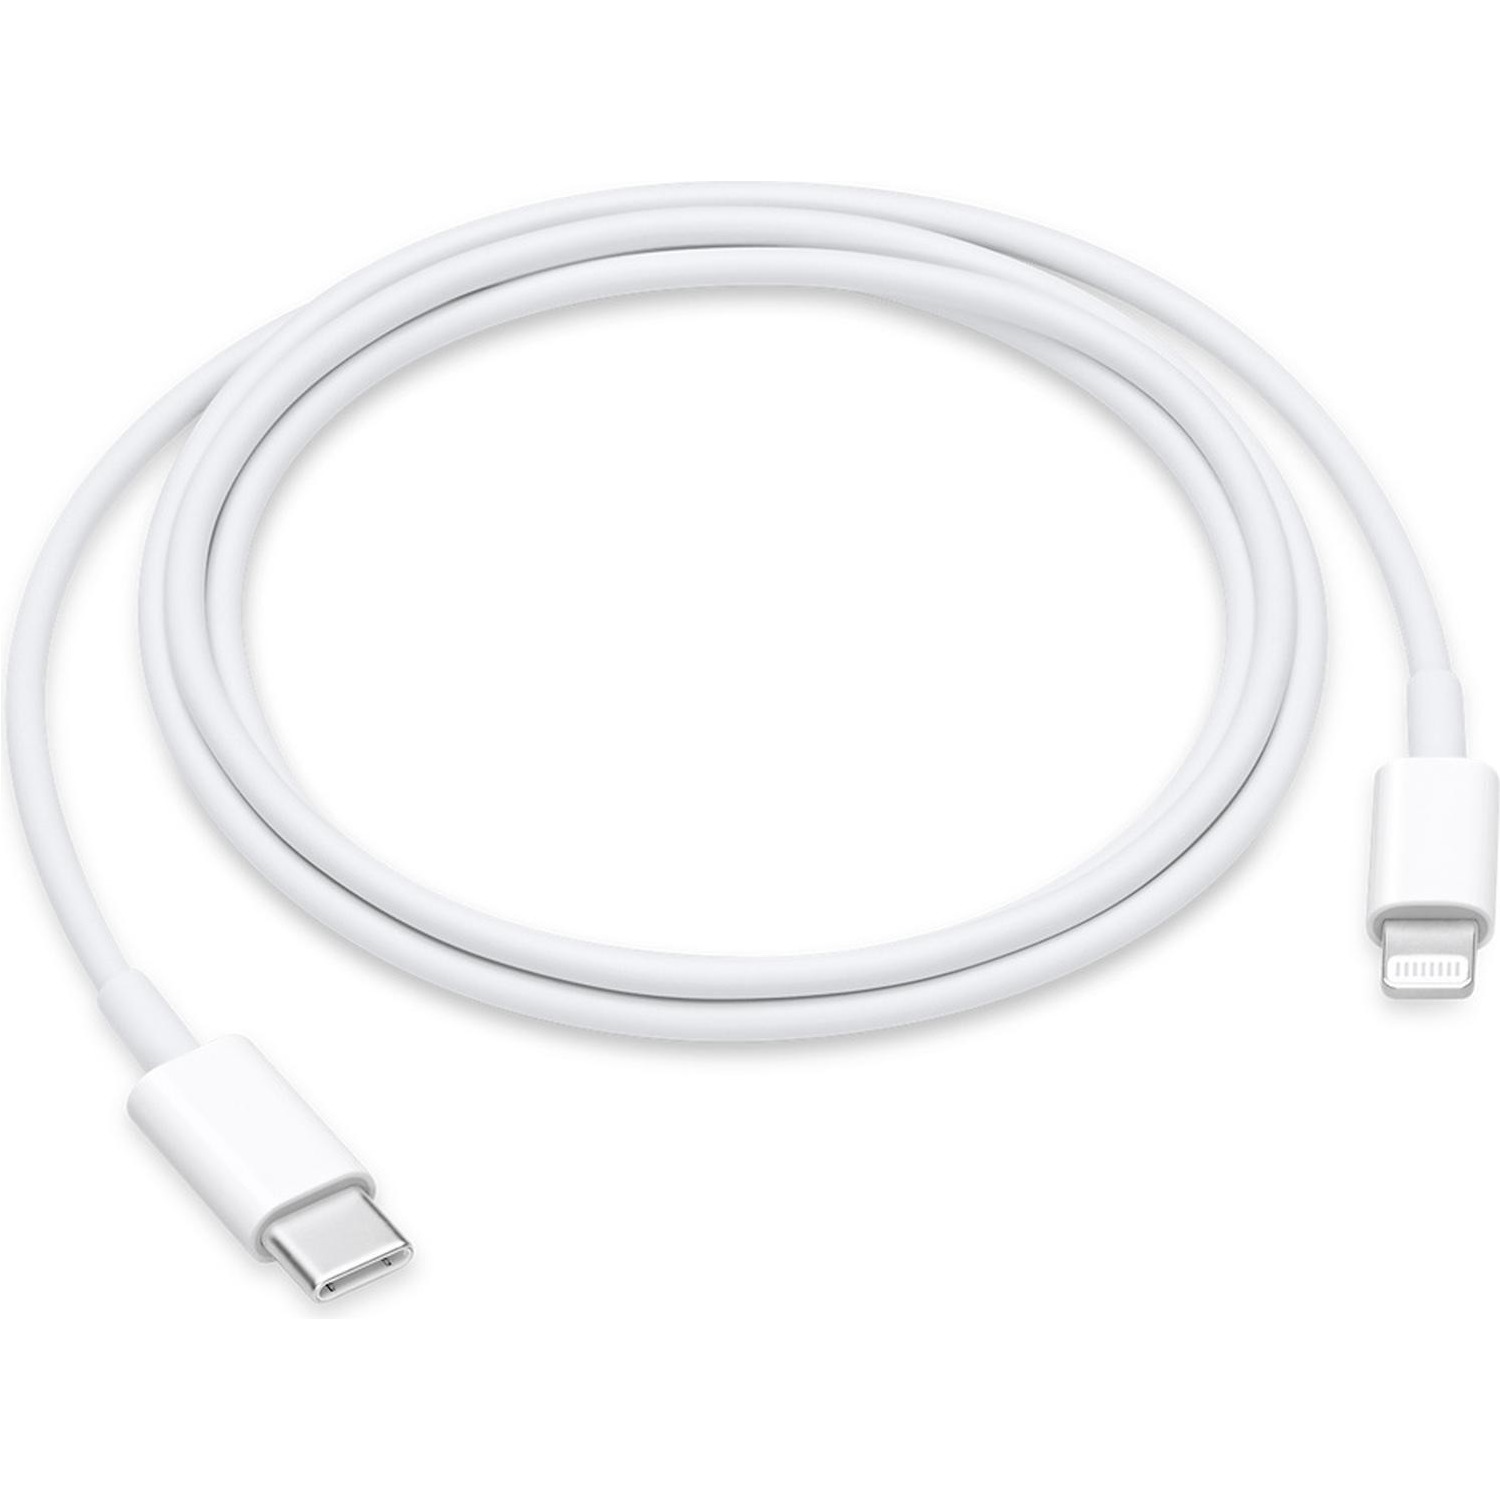 Immagine per Cavo lighting Apple USB-C 1 metro da DIMOStore